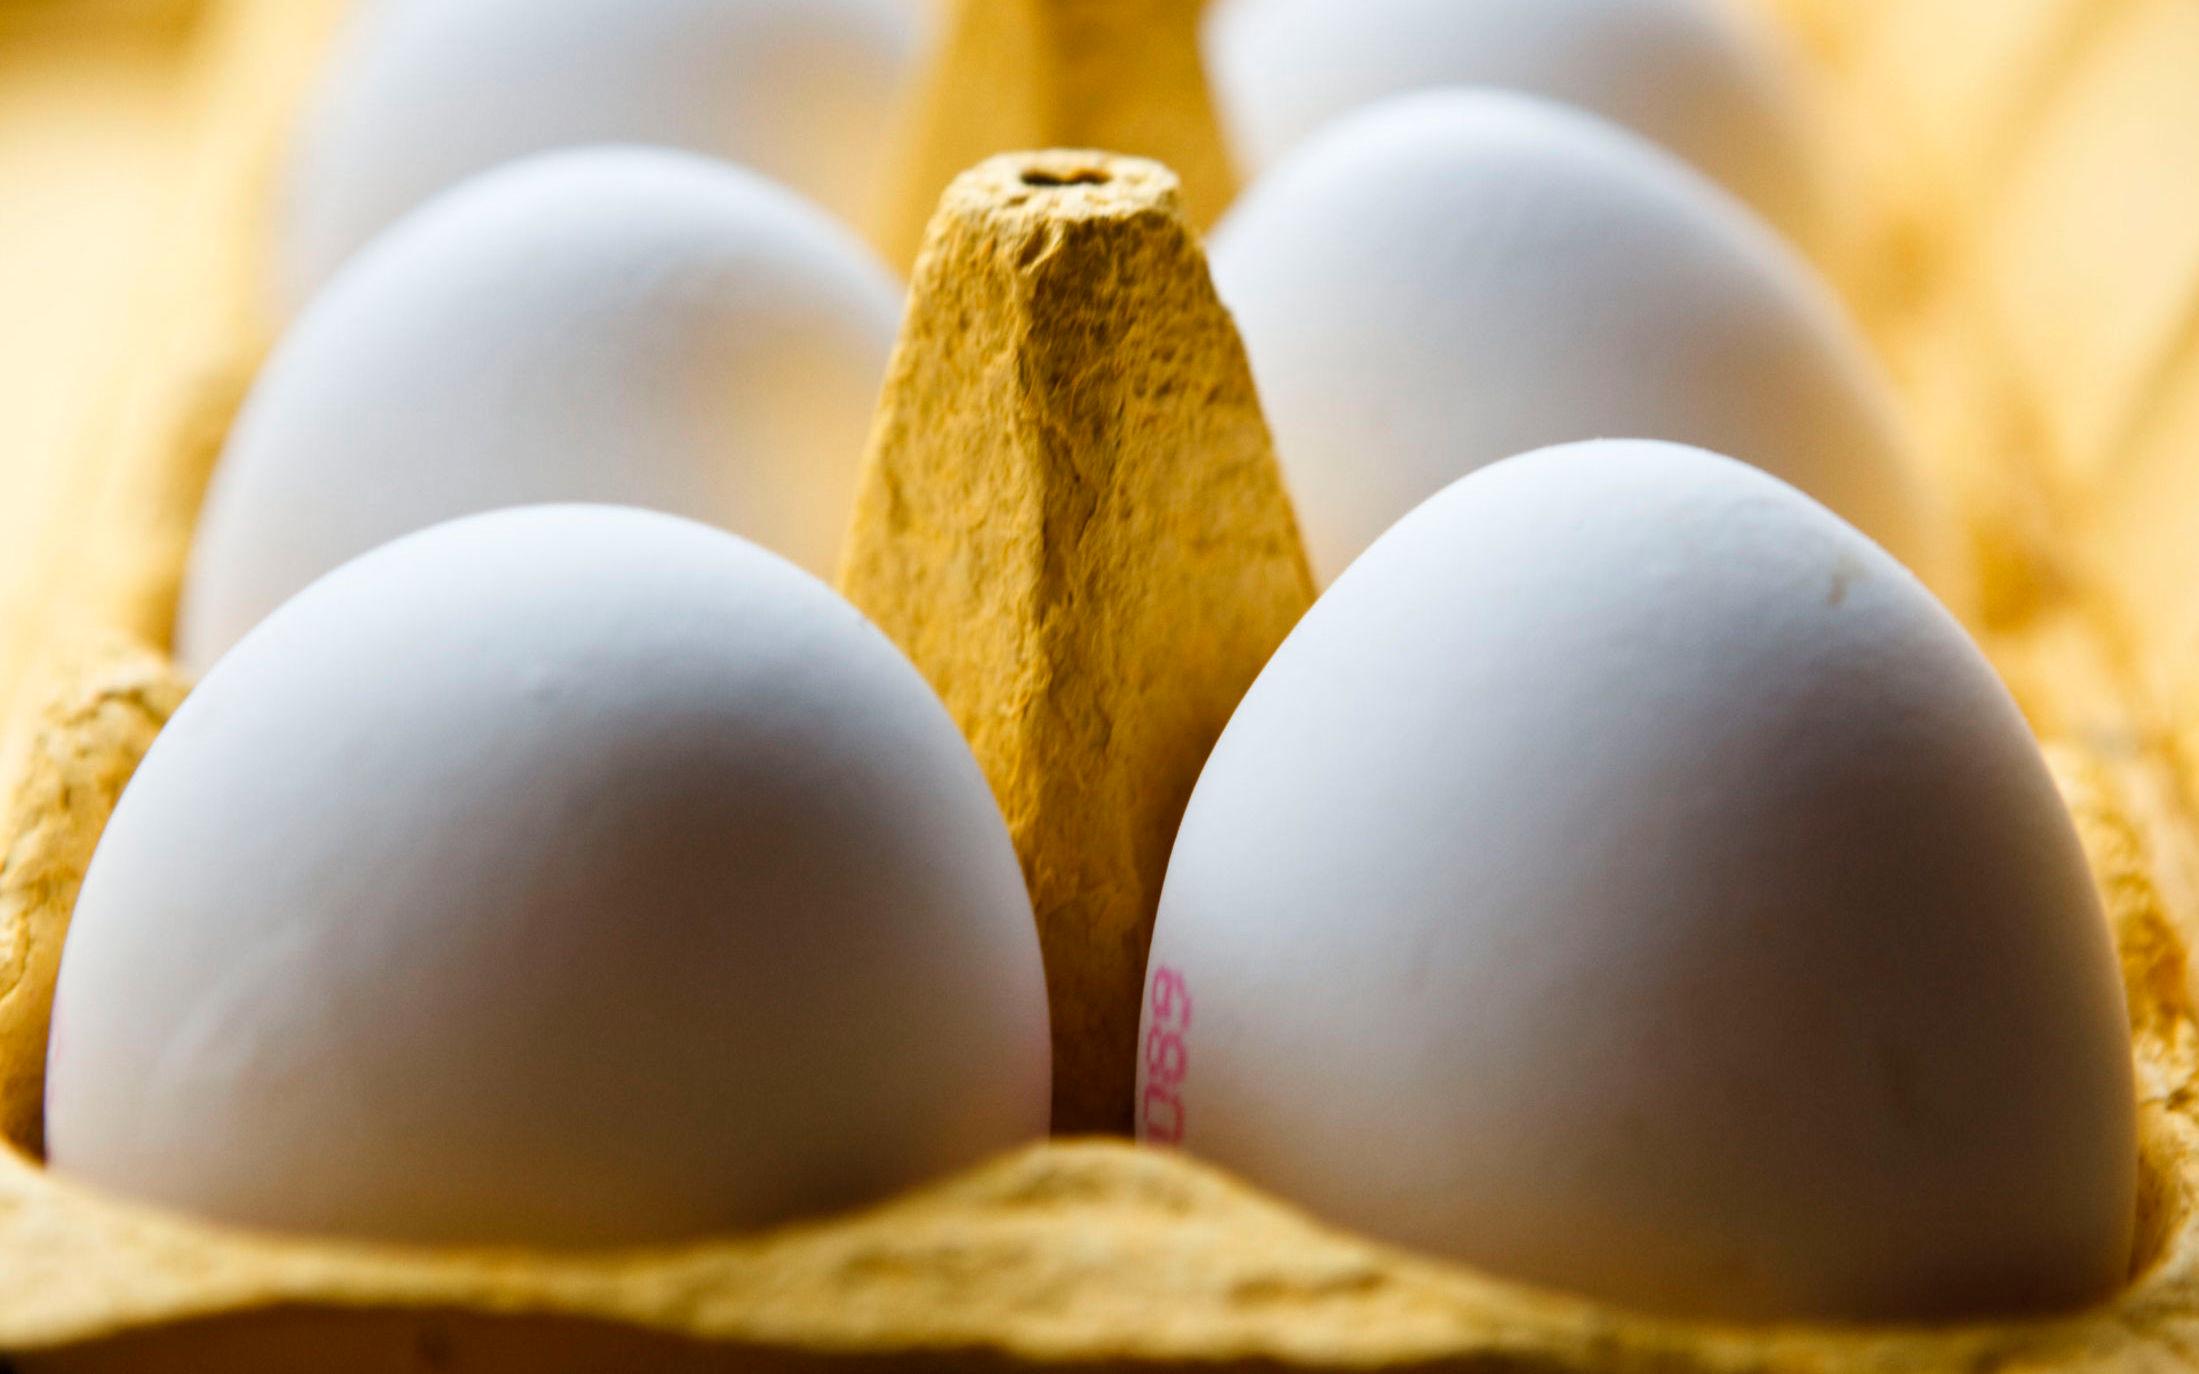 IKKE SÅ VIKTIG: I de fleste tilfeller er det ikke så nøye om eggene er kalde eller romtempererte. Foto: NTB Scanpix